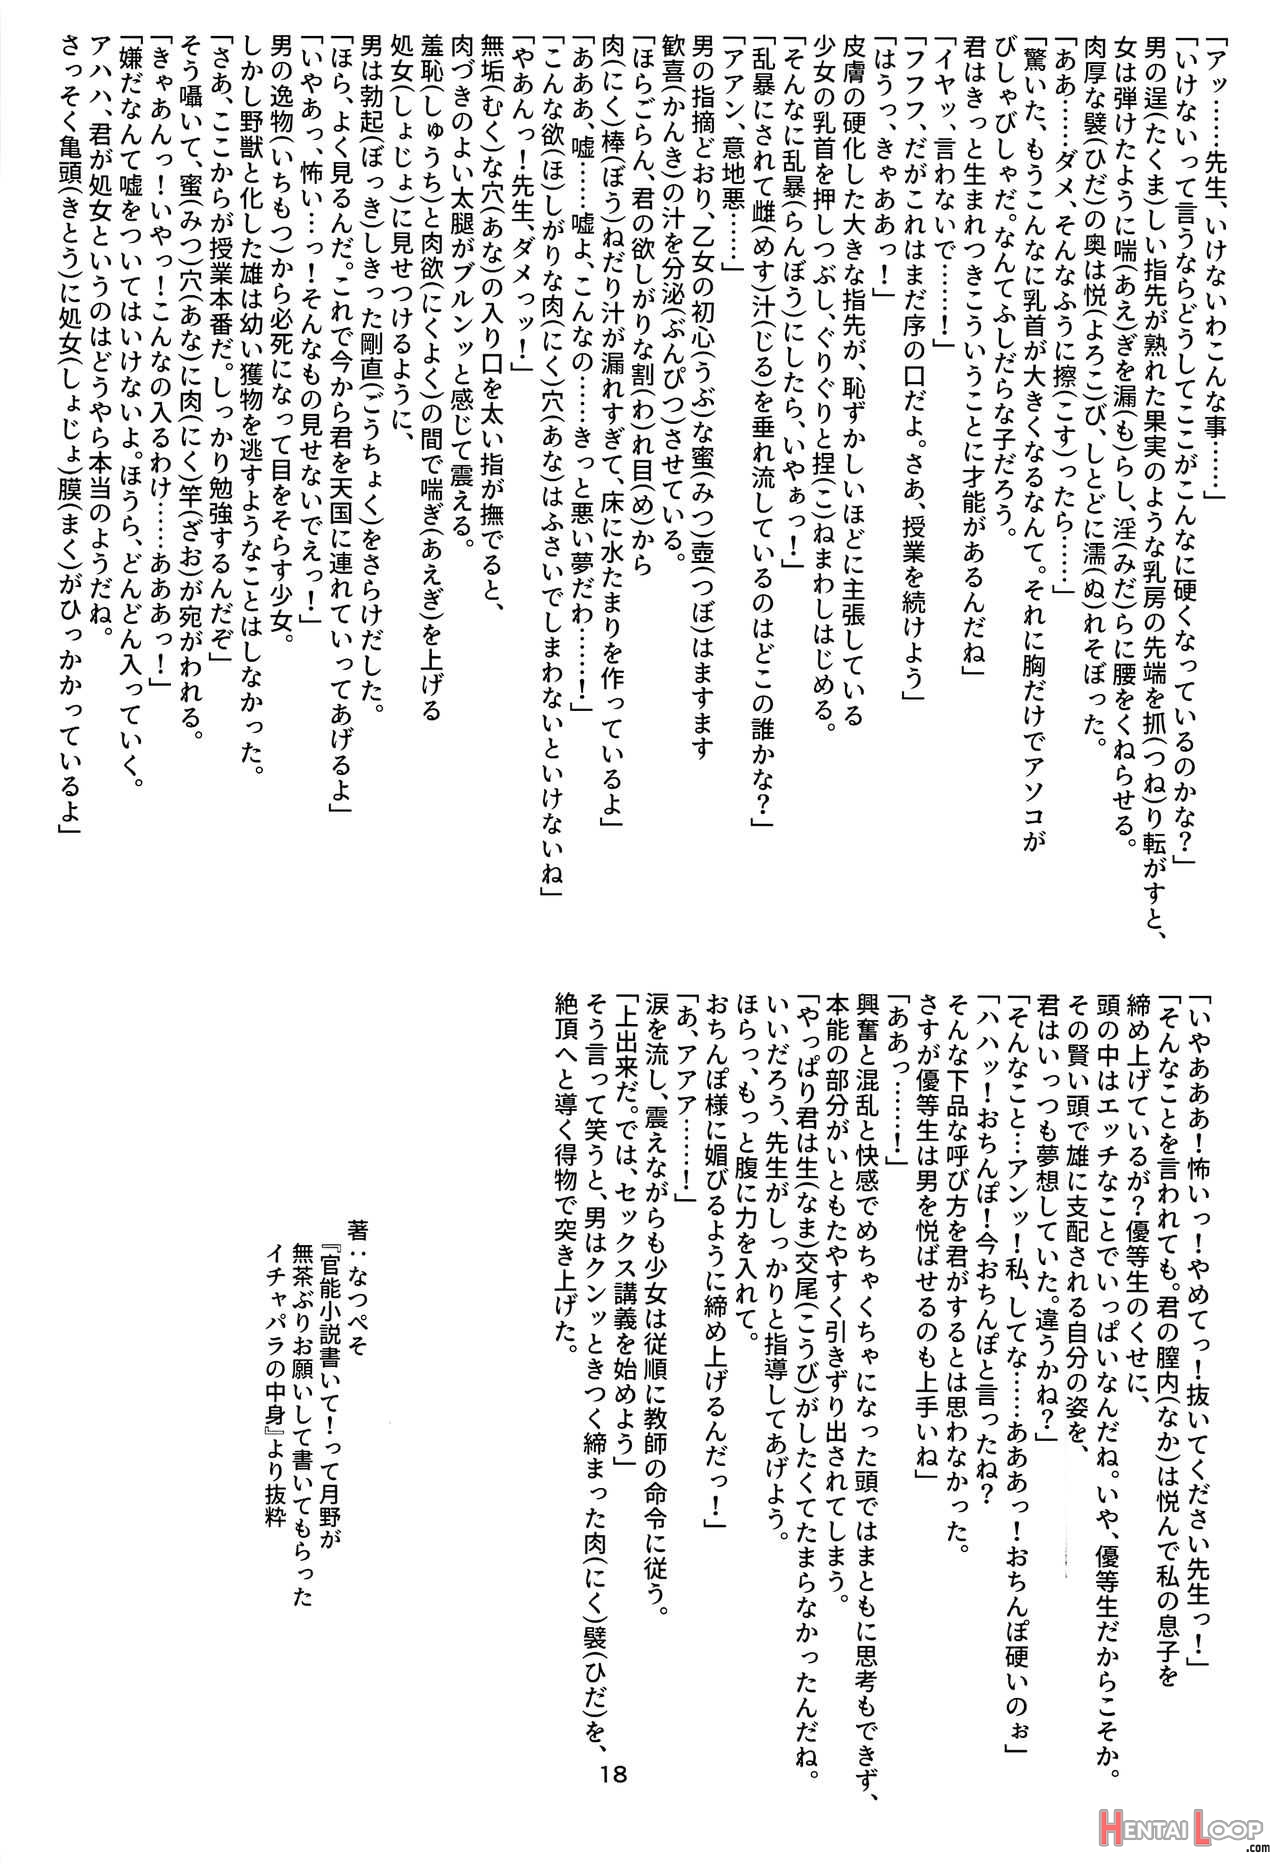 A Secret Study With Sensei page 17